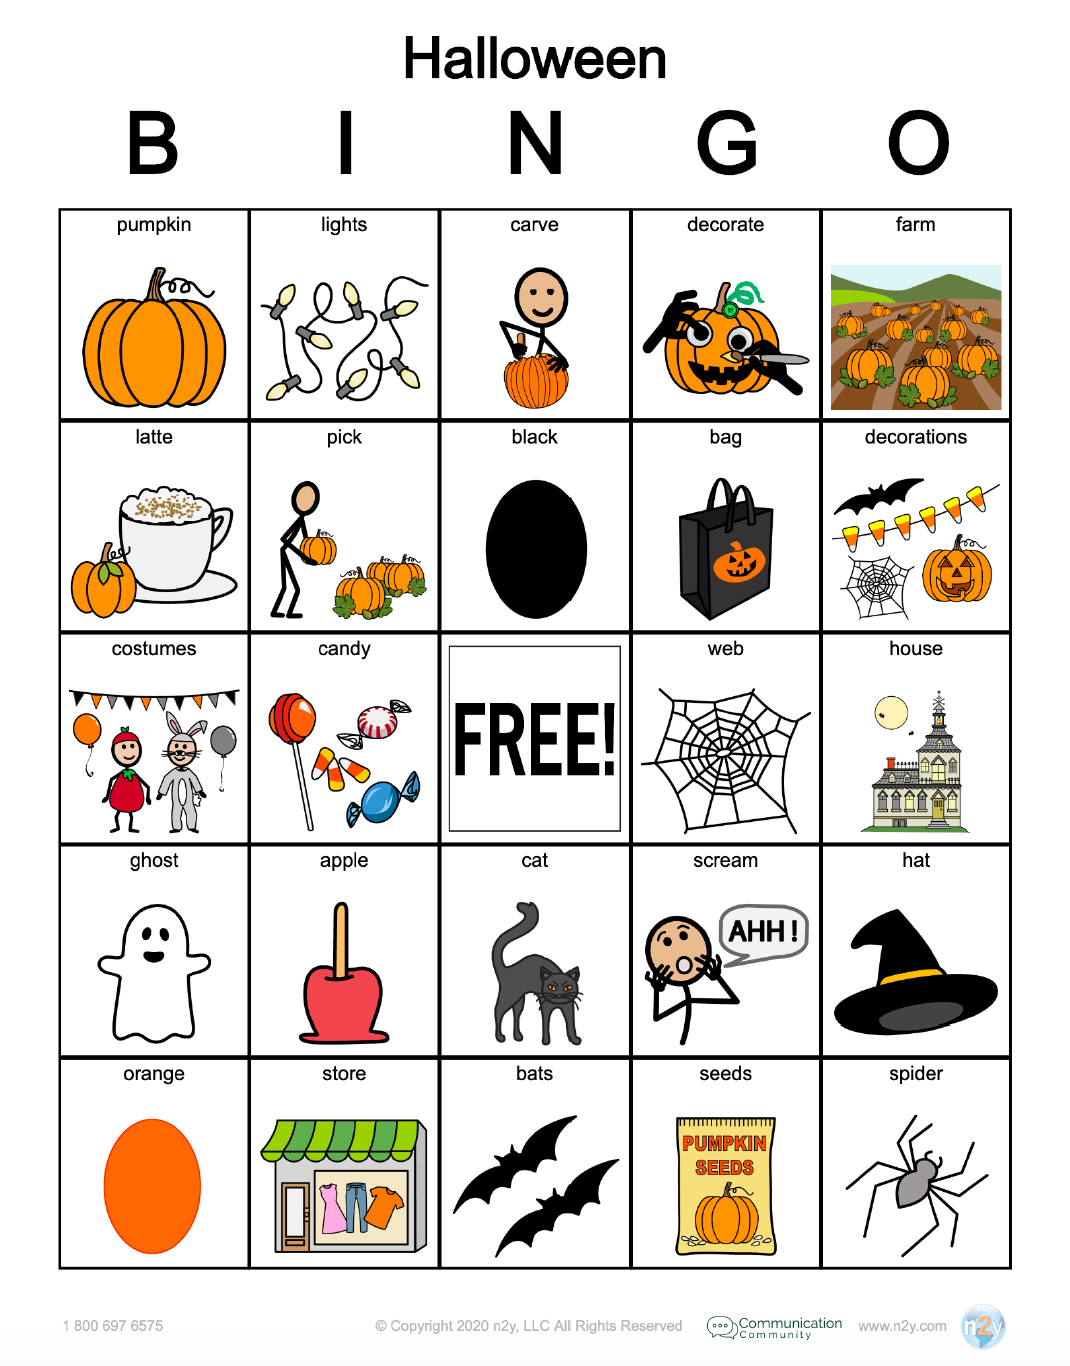 halloween-bingo-activity-free-digital-download